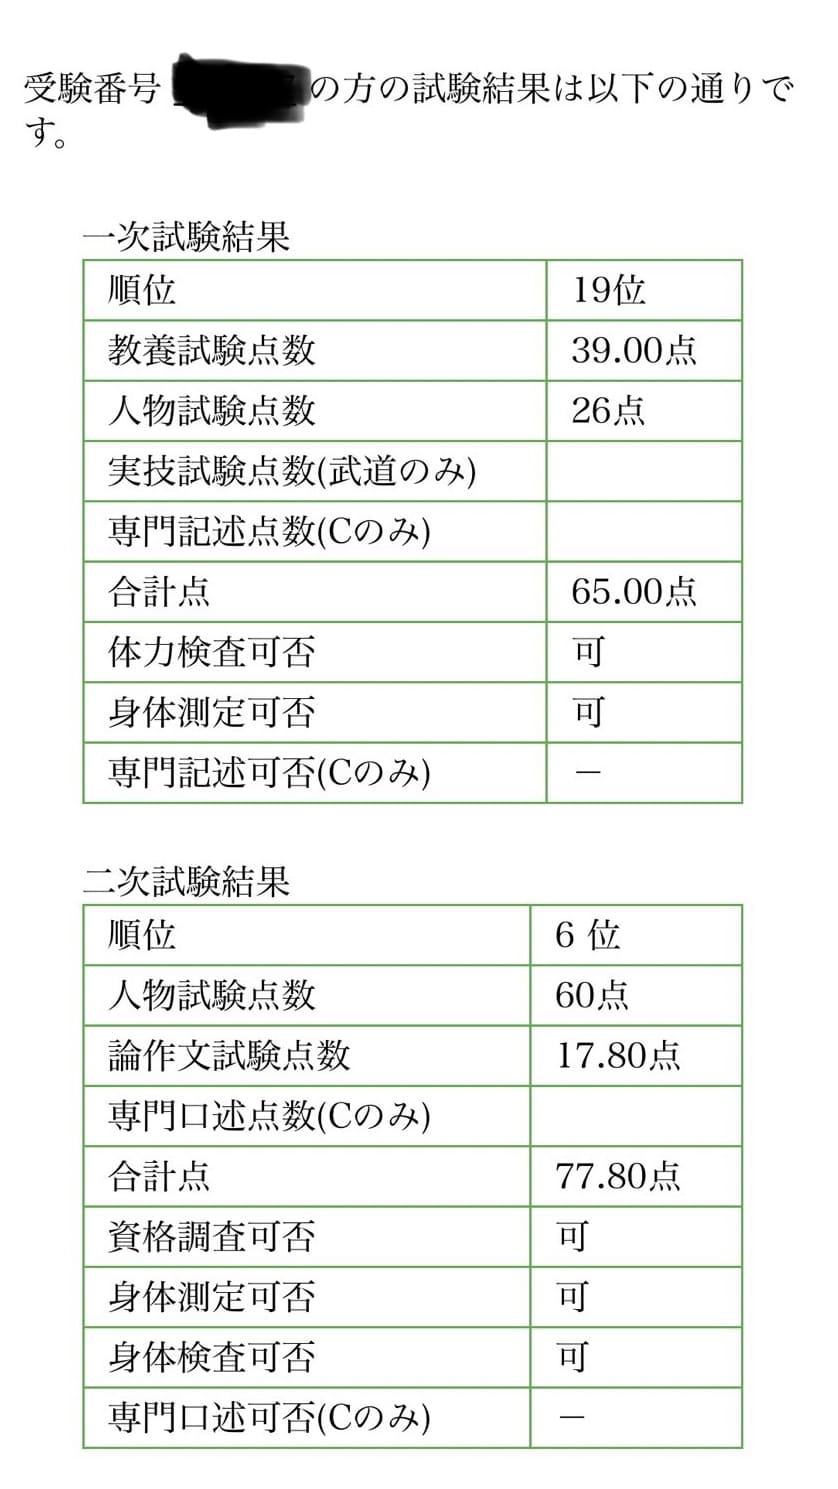 福岡県警の採用試験の点数配分